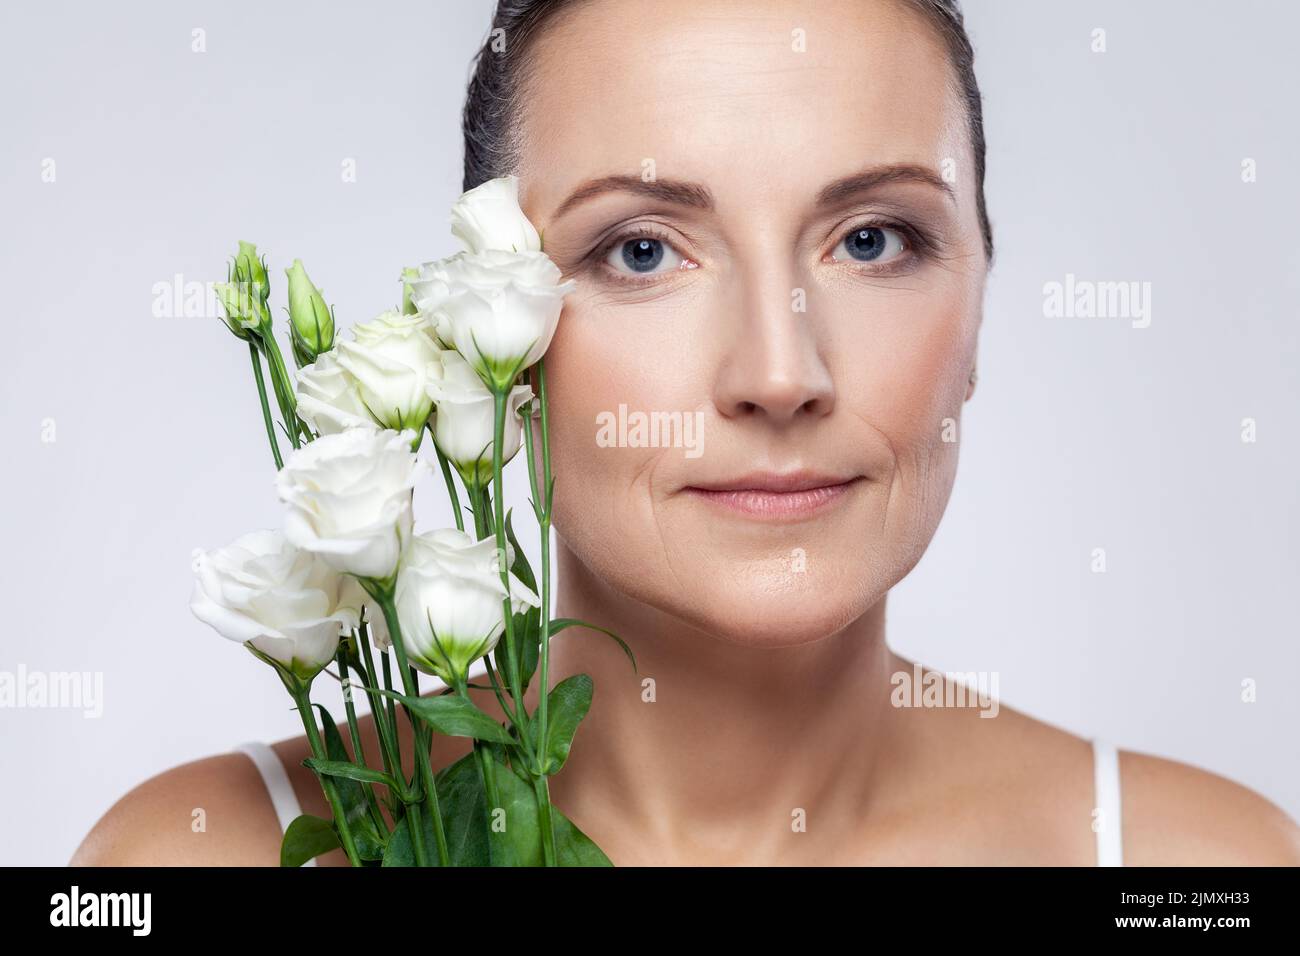 Retrato de primer plano de hermosa mujer de mediana edad con una piel perfecta sosteniendo flores, mirando la cámara con expresión tranquila. Estudio de interior grabado aislado sobre fondo gris. Foto de stock